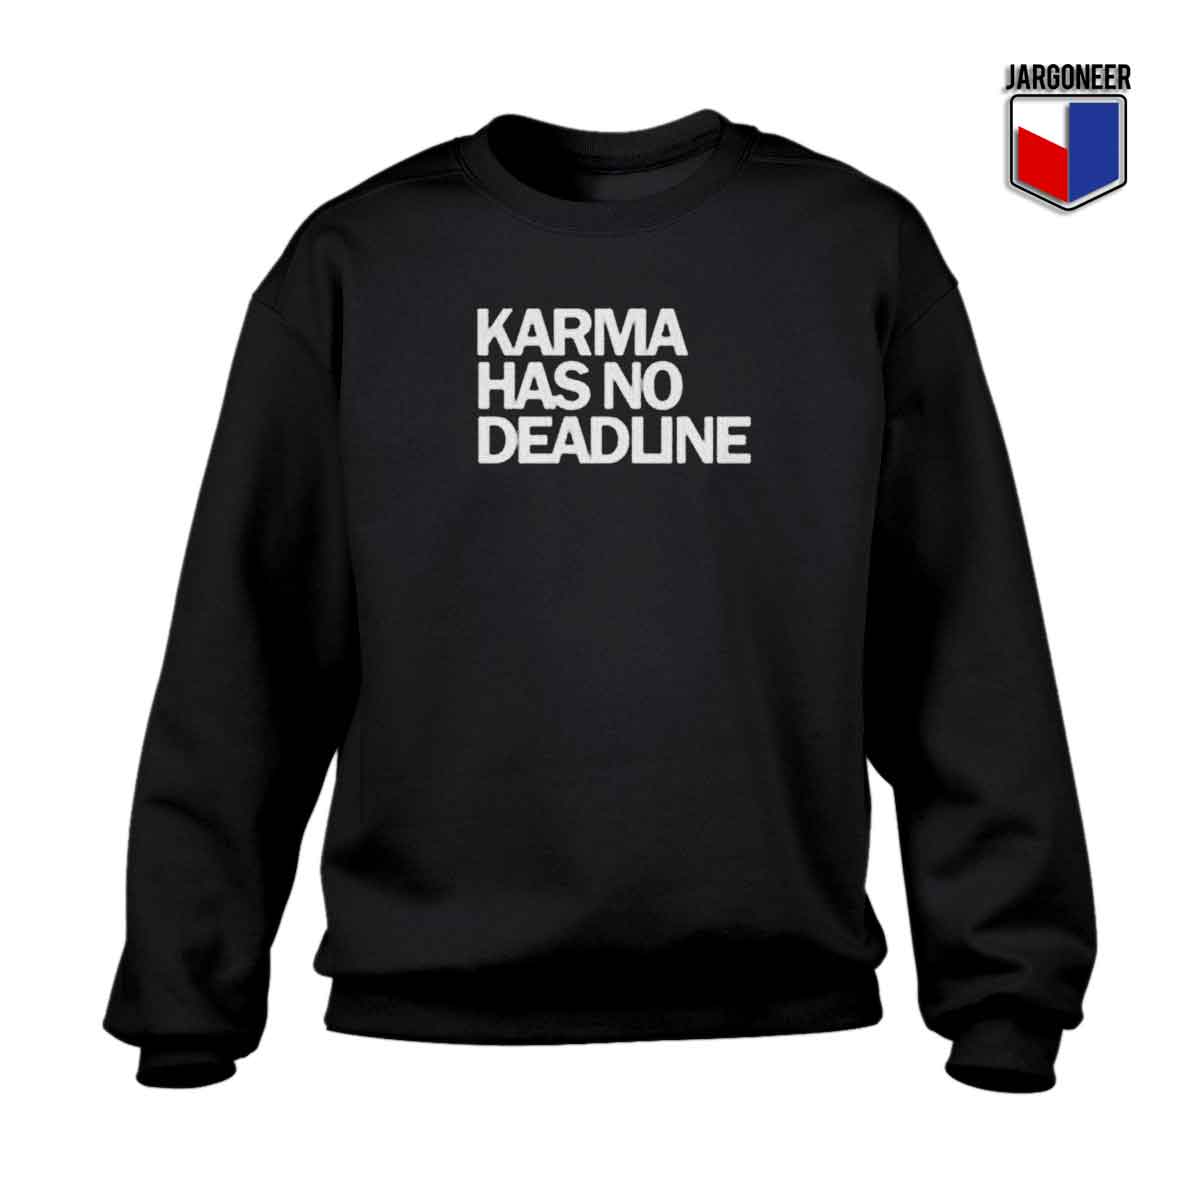 Karma Has No Deadline 1 - Shop Unique Graphic Cool Shirt Designs